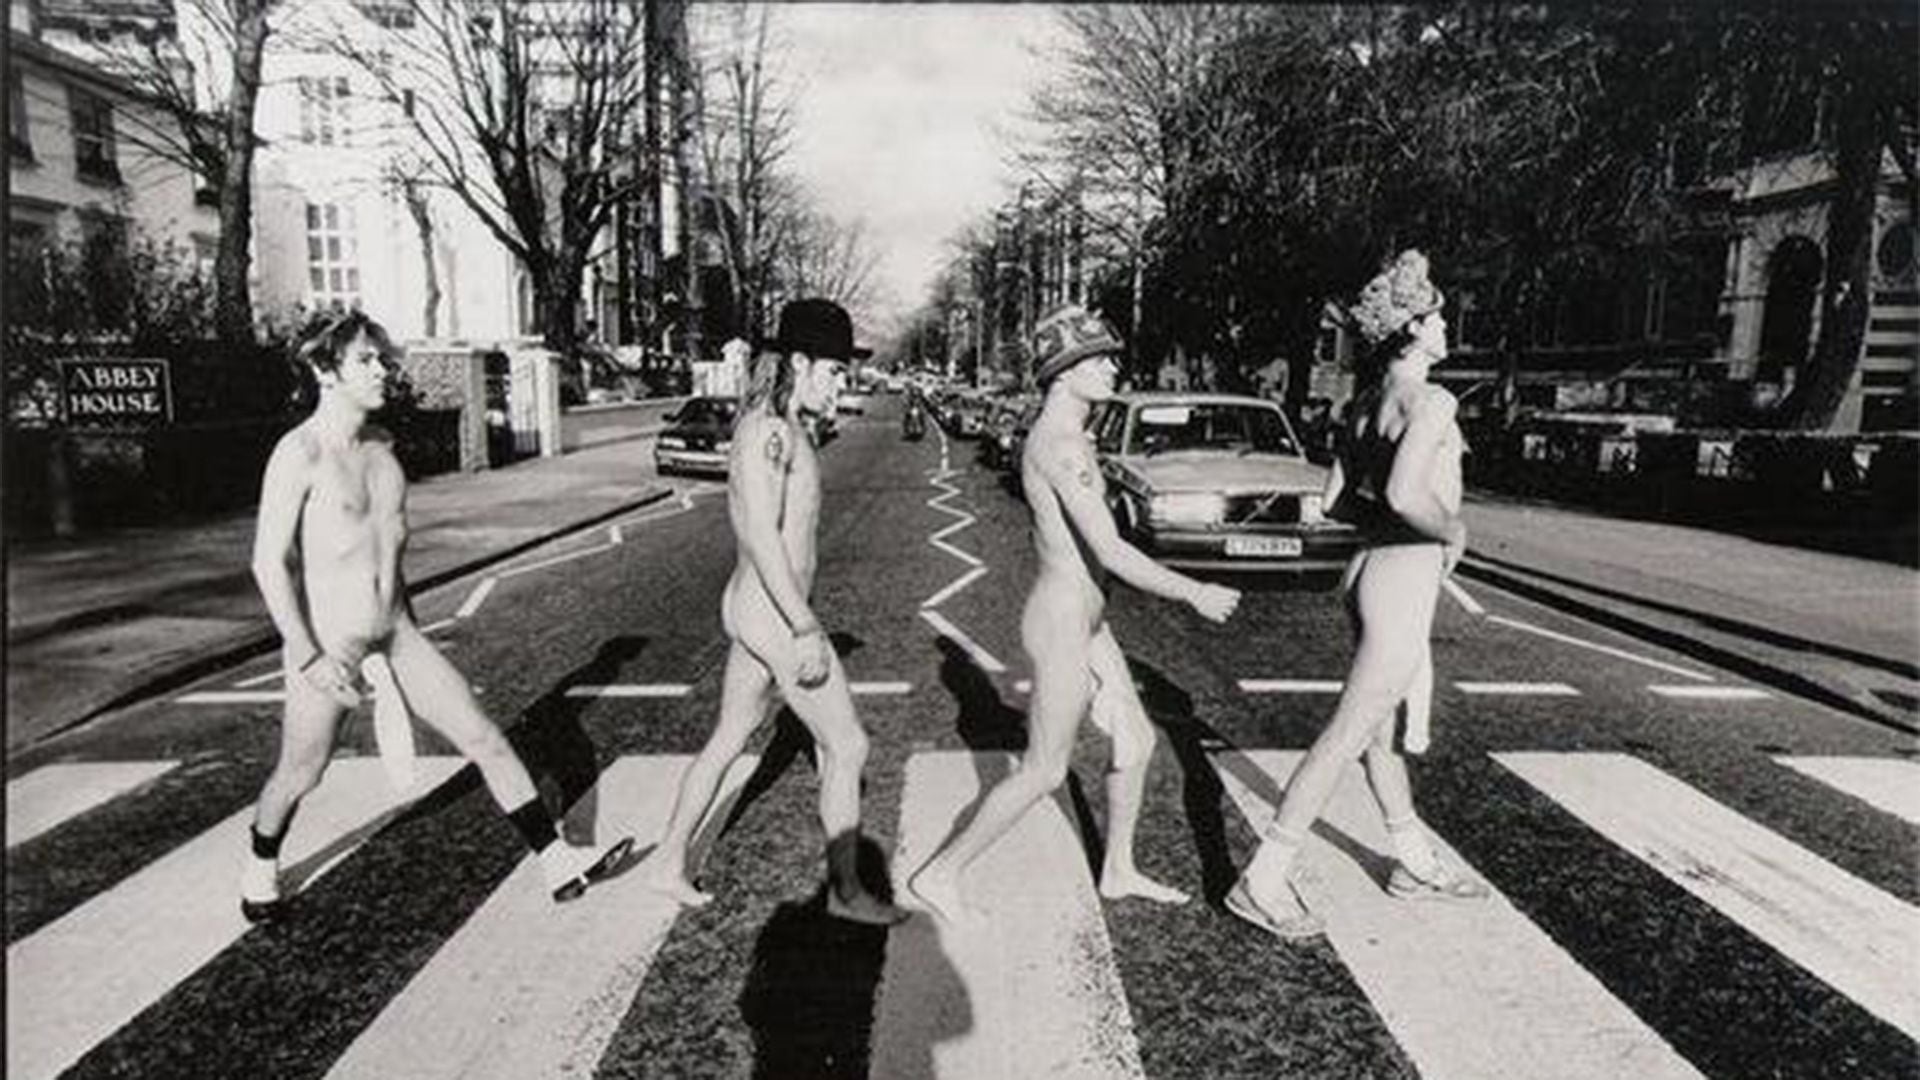 La foto fue parodiada muchas veces. Una de las más célebres es la hicieron desnudos los miembros de los Red Hot Chilli Peppers para la portada de un EP